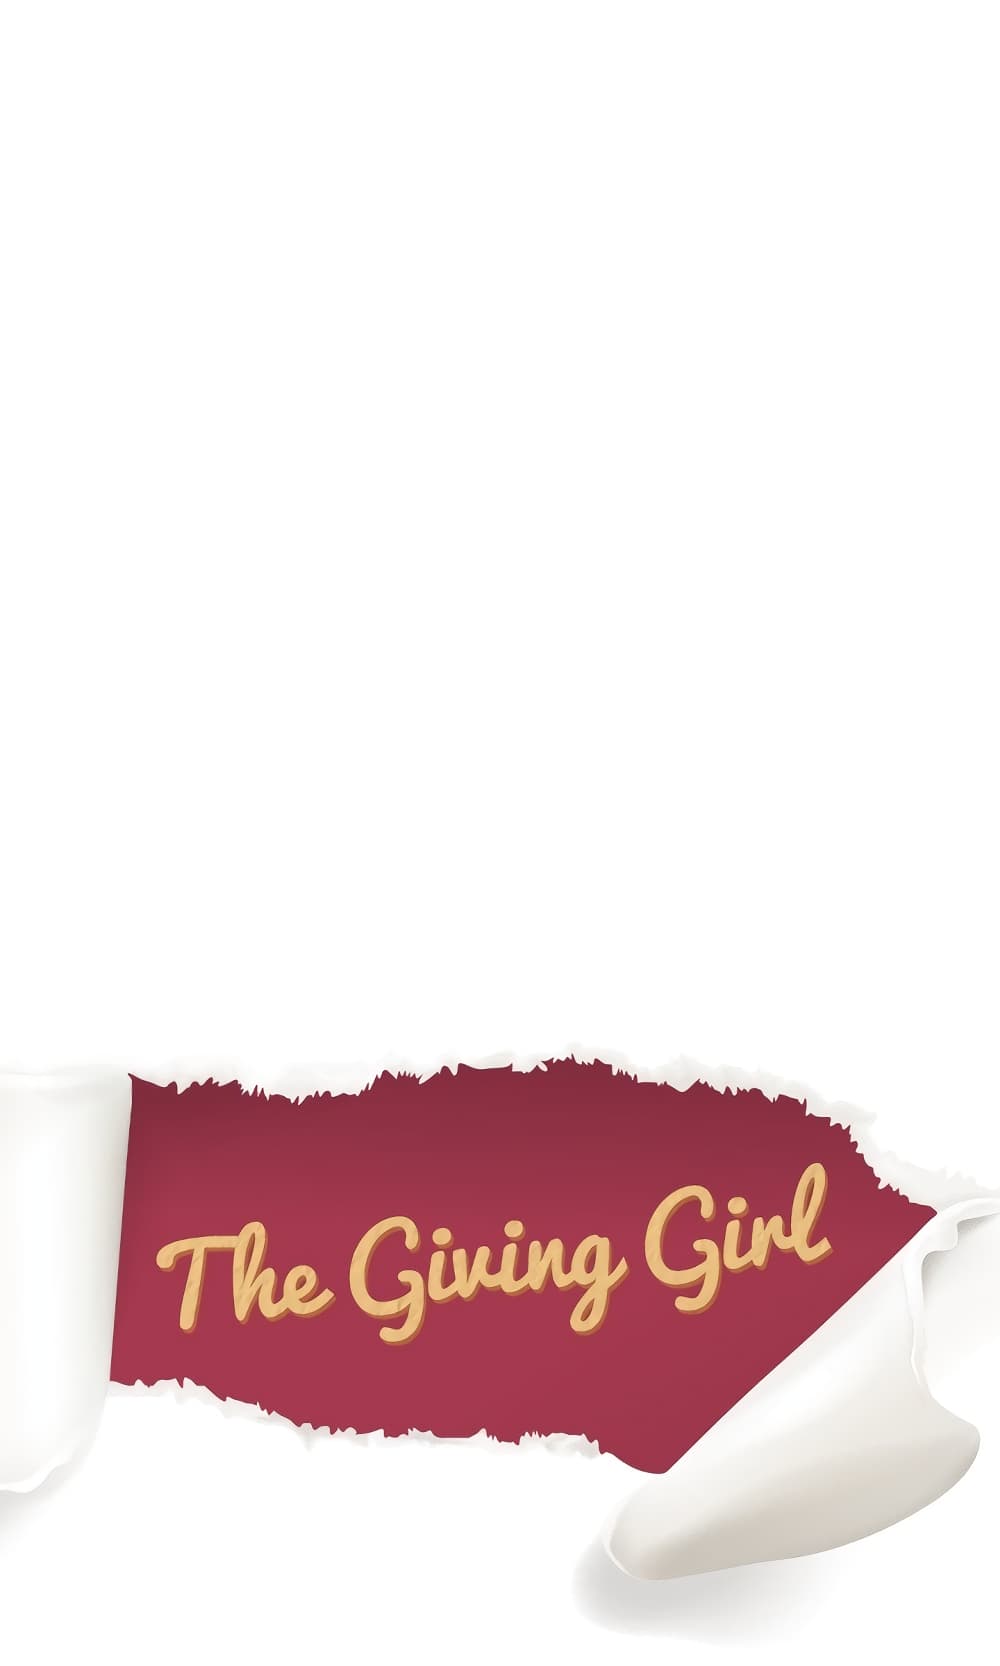 Giving Girl 2 06